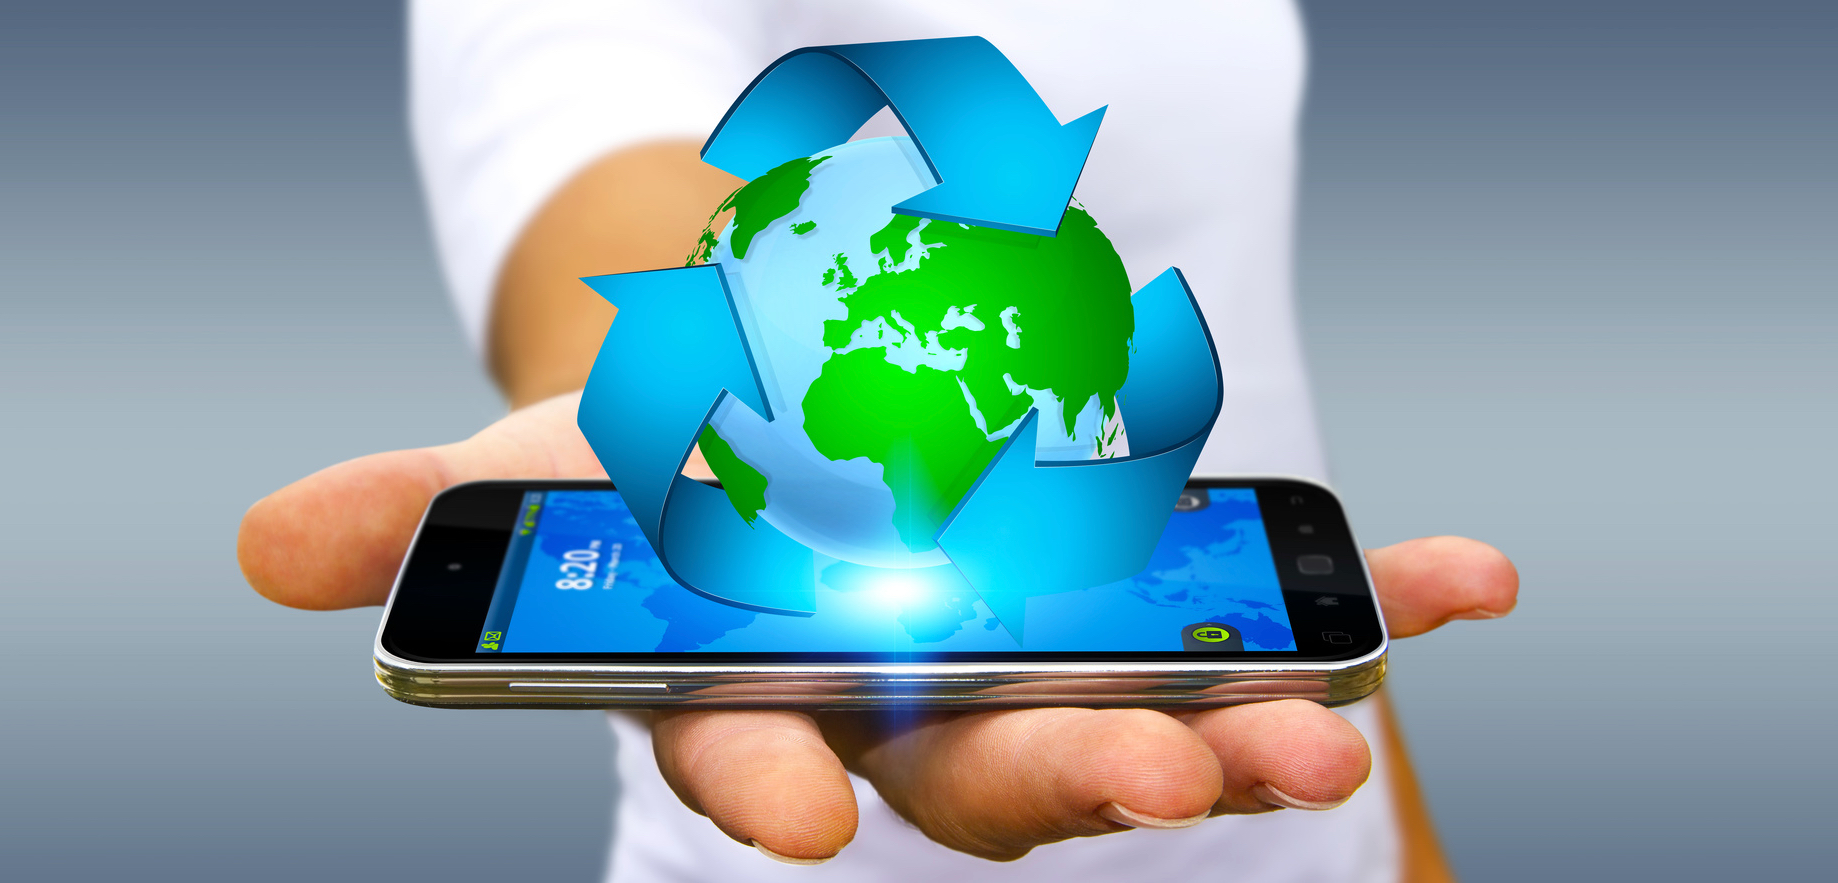 Pensez à recycler votre téléphone au lieu de le jeter. Certaines sociétés sont spécialisées dans la gestion de ces appareils usagés. © sdecoret, fotolia